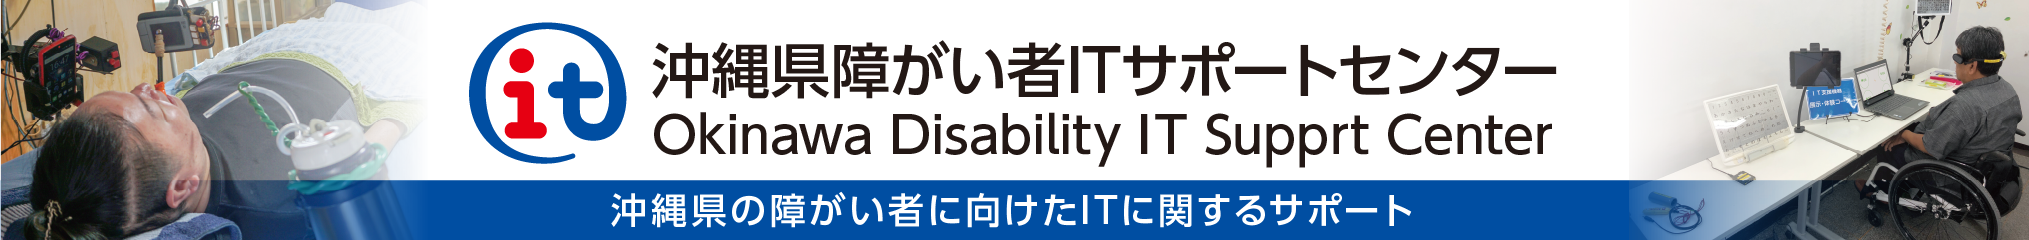 沖縄県障がい者ITサポートセンター Okinawa Disability IT Support Center 沖縄県の障がい者に向けたITに関するサポート（別ウインドウで開きます）